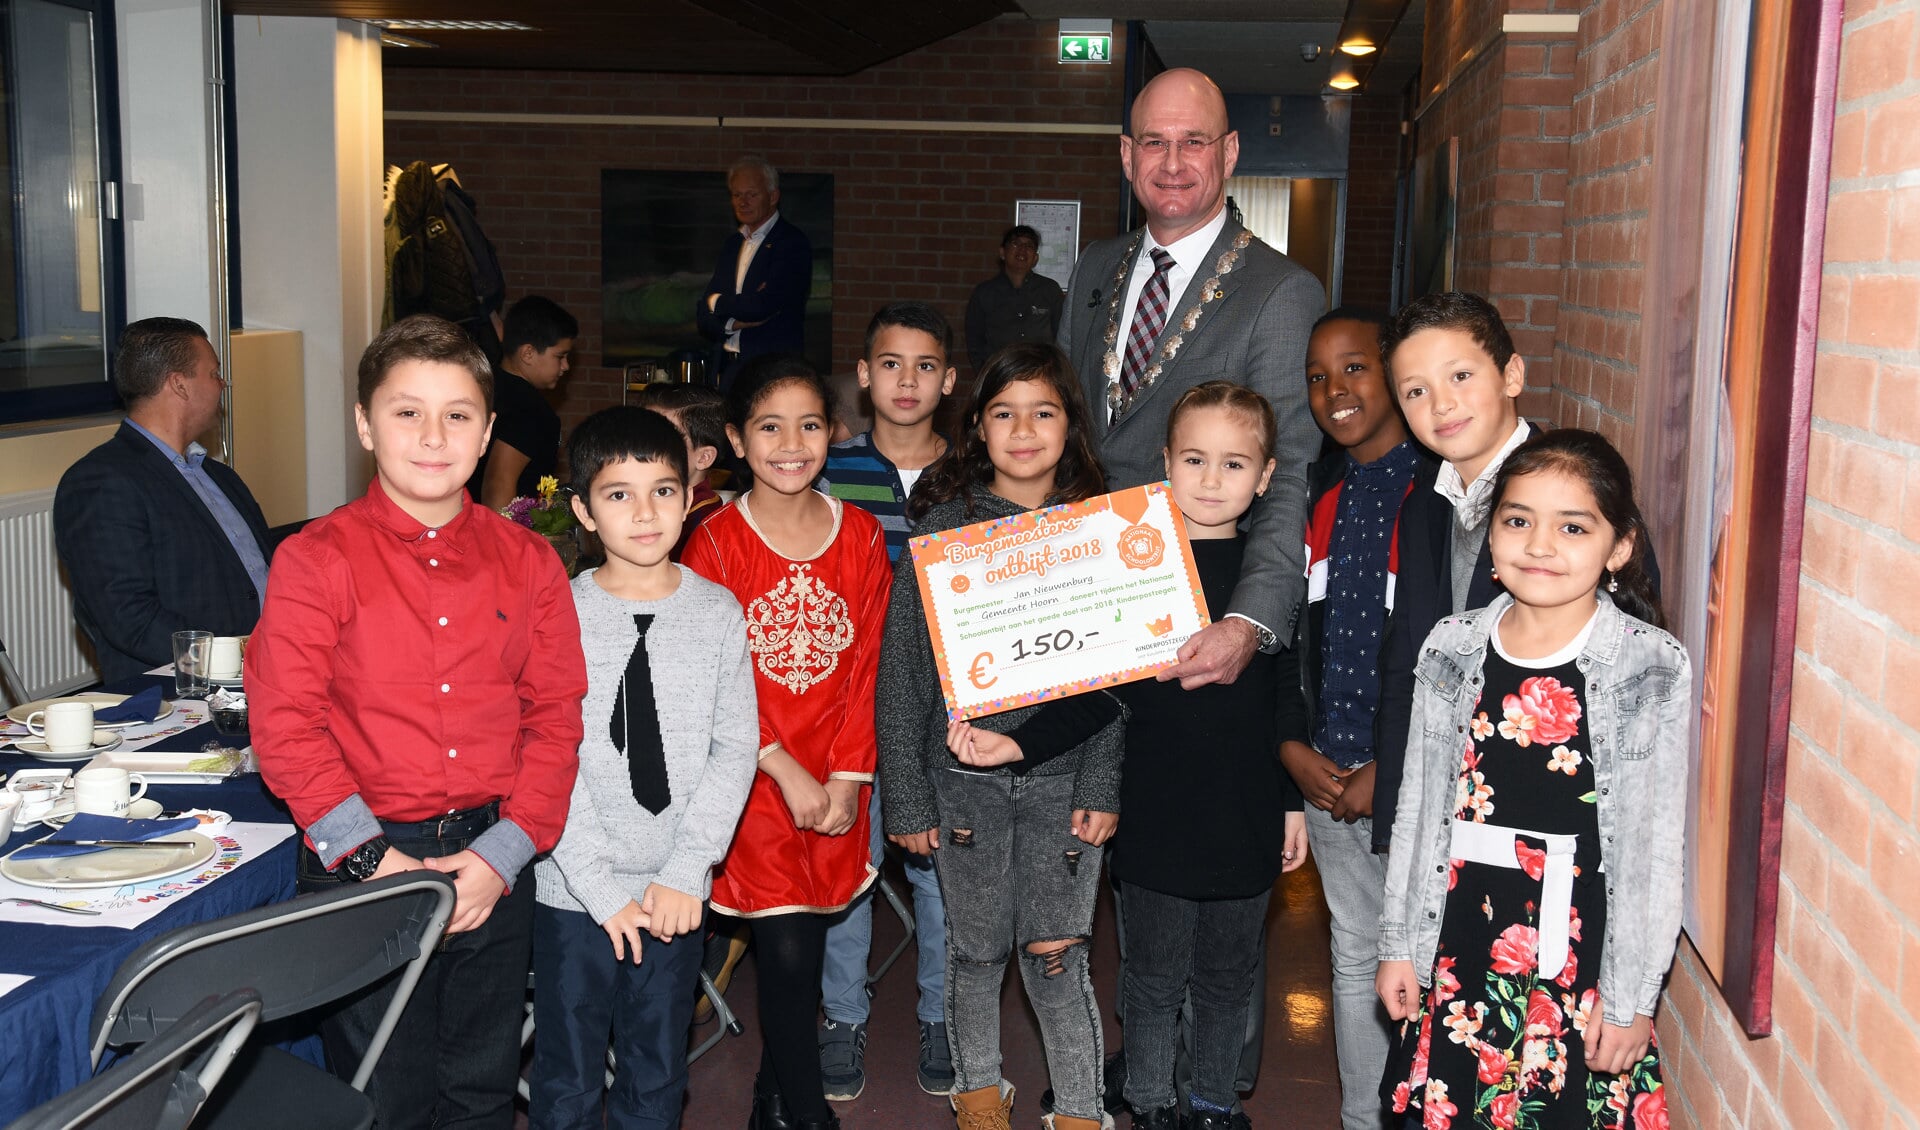 Na het ontbijt ontvingen de leerlingen uit handen van burgemeester Jan Nieuwenburg een cheque voor de Stichting Kinderpostzegels. (Foto: aangeleverd)